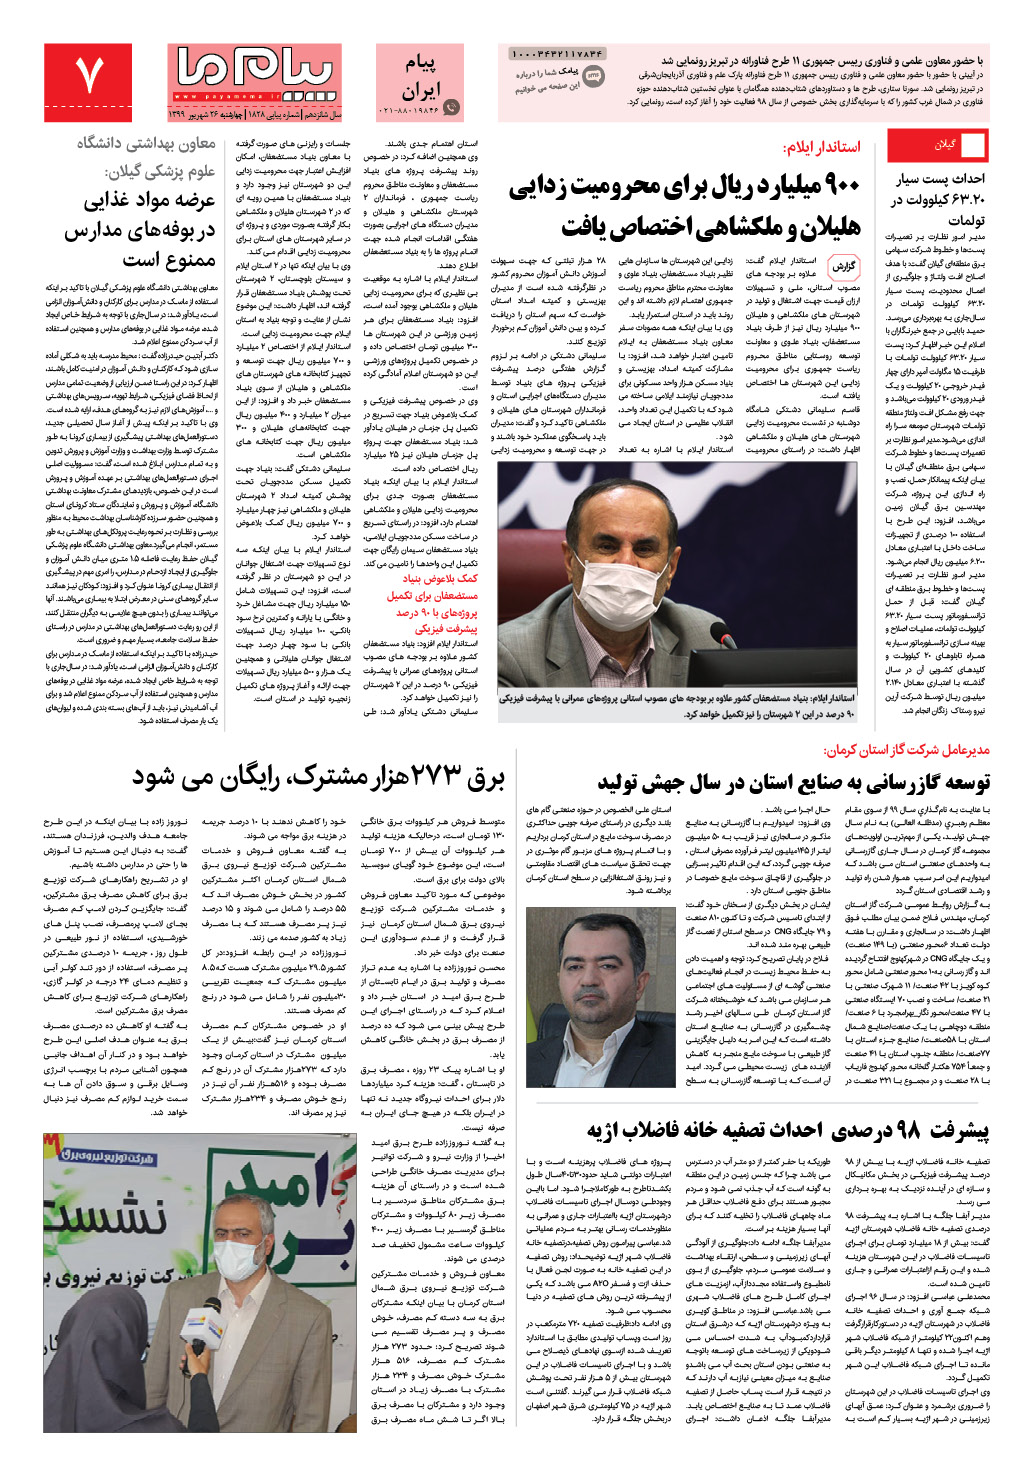 صفحه پیام ایران شماره 1828 روزنامه پیام ما